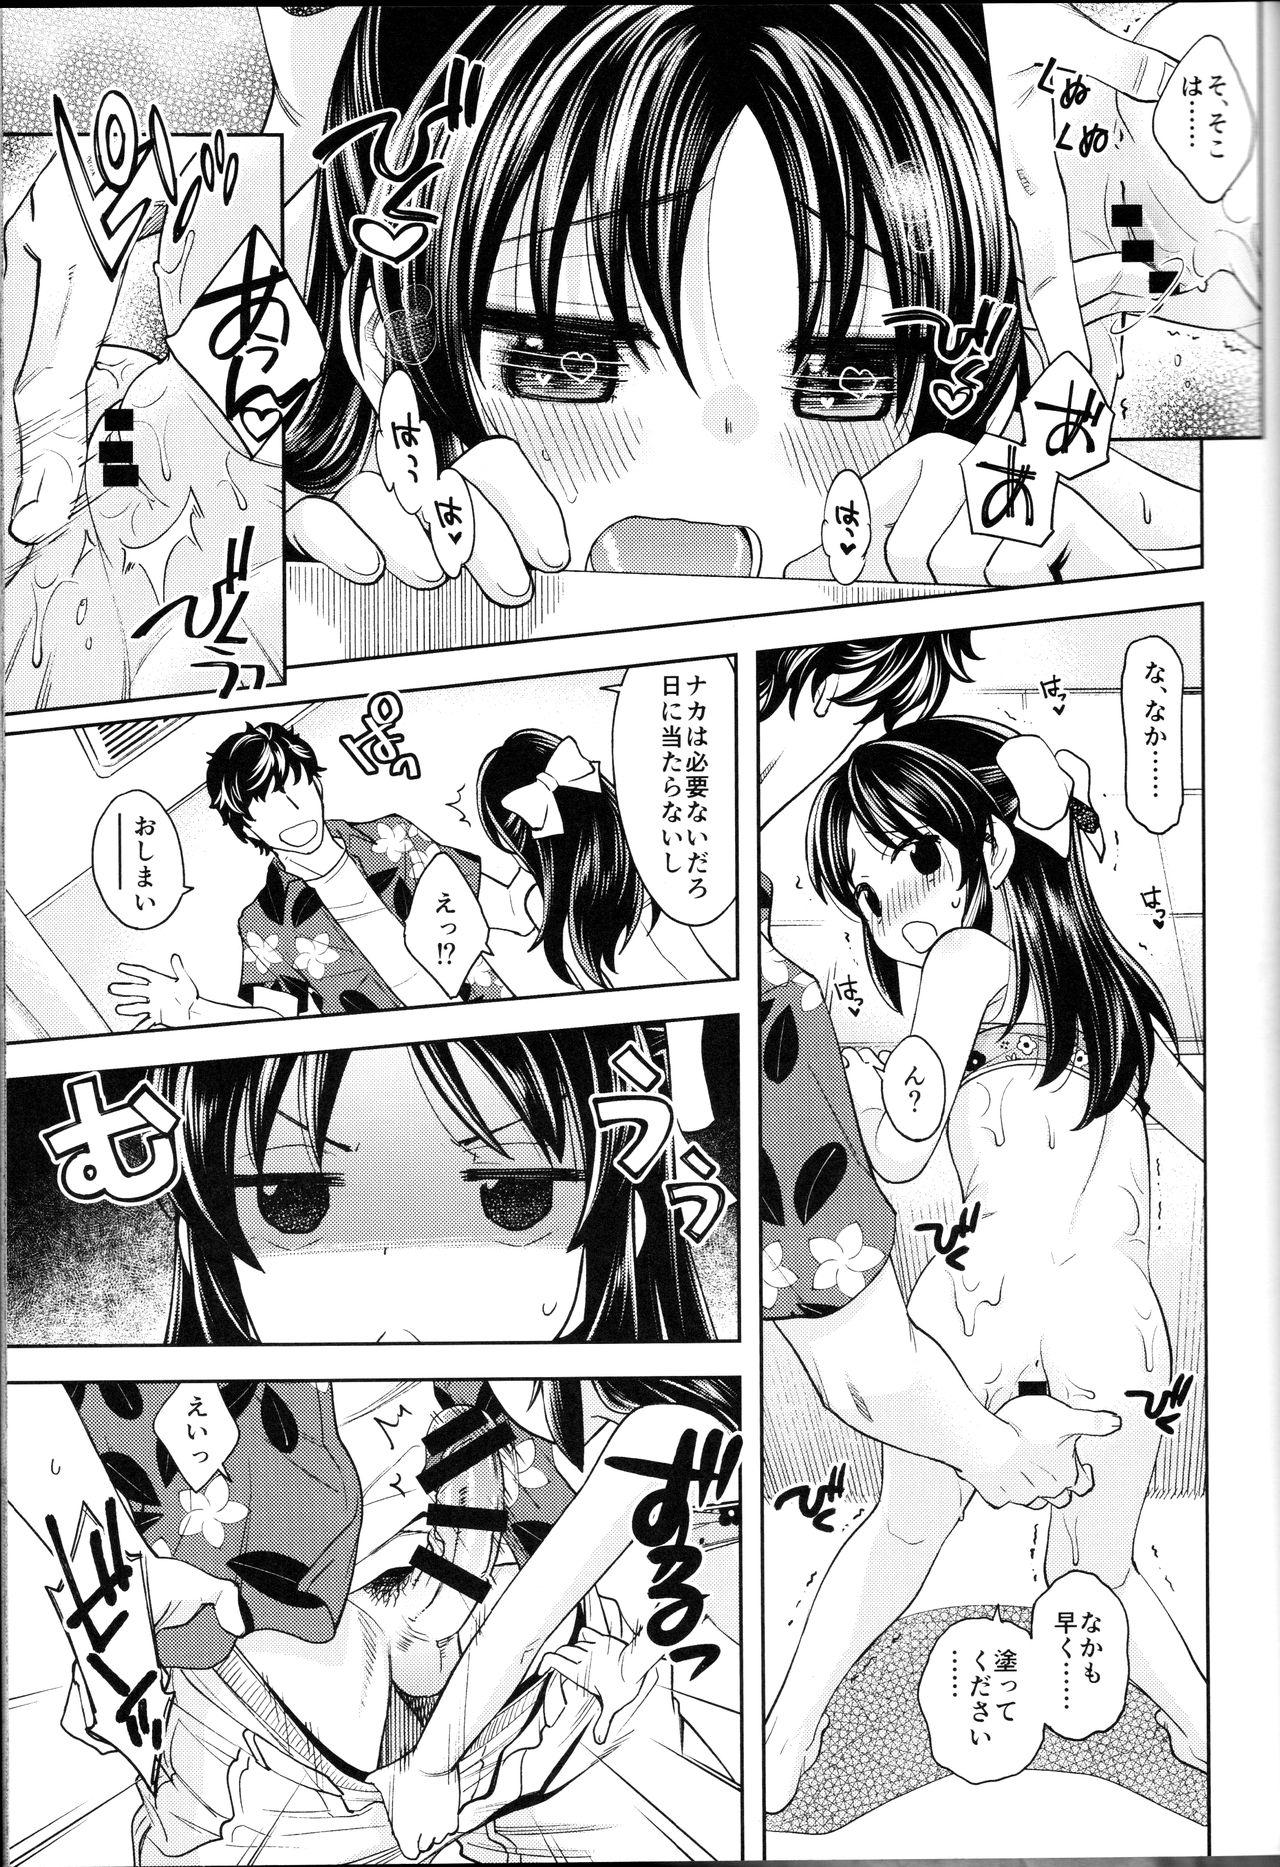 Mas Warui Ko Arisu 4 - The idolmaster Scandal - Page 8